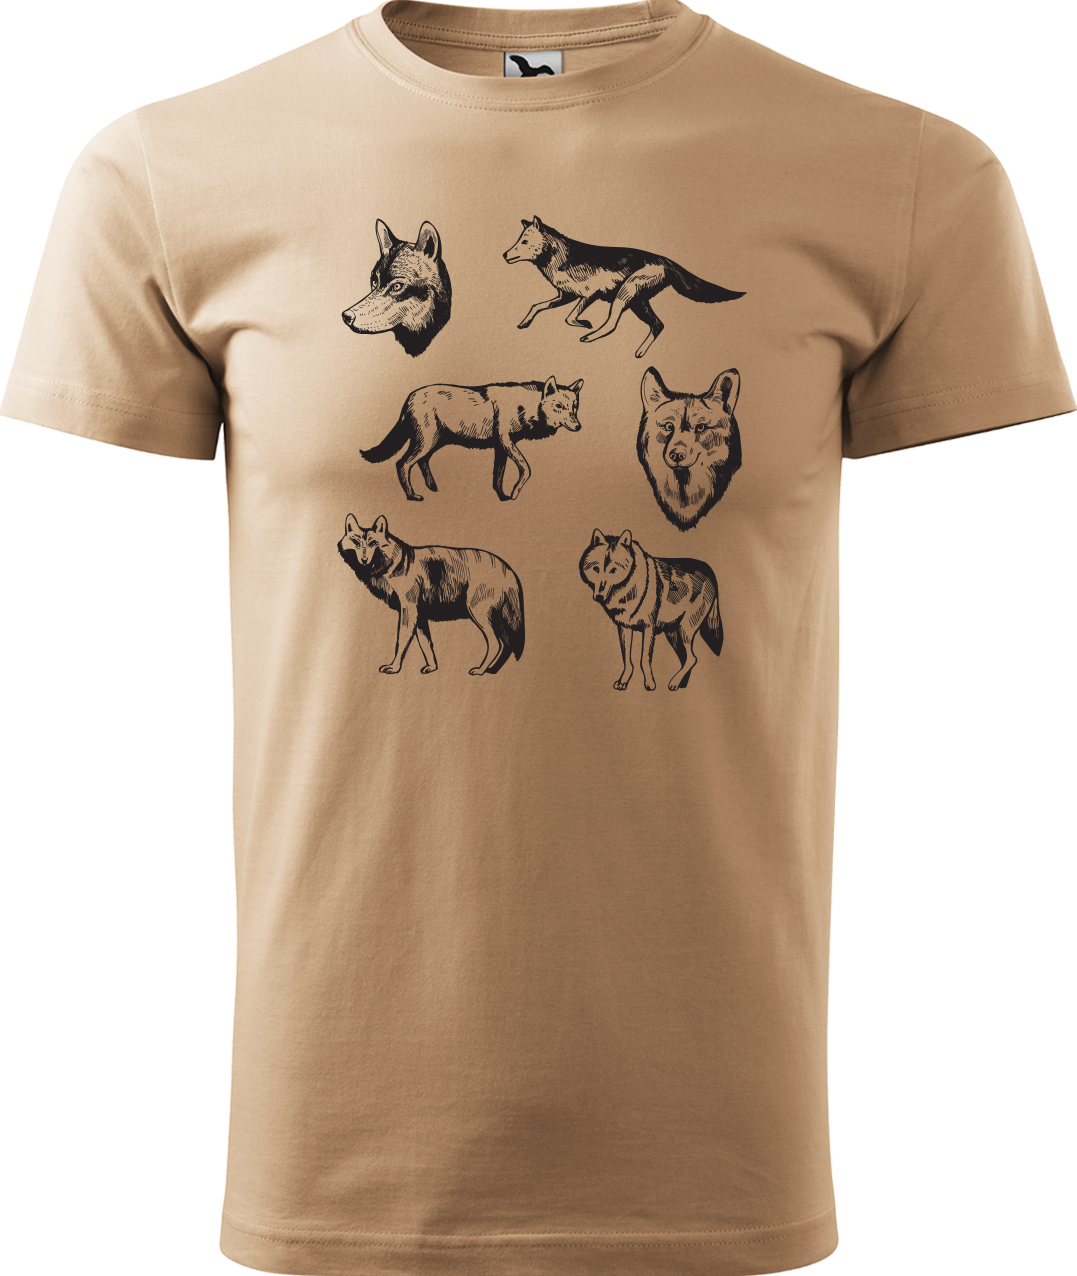 Pánské tričko s vlkem - Vlci Velikost: M, Barva: Písková (08), Střih: pánský